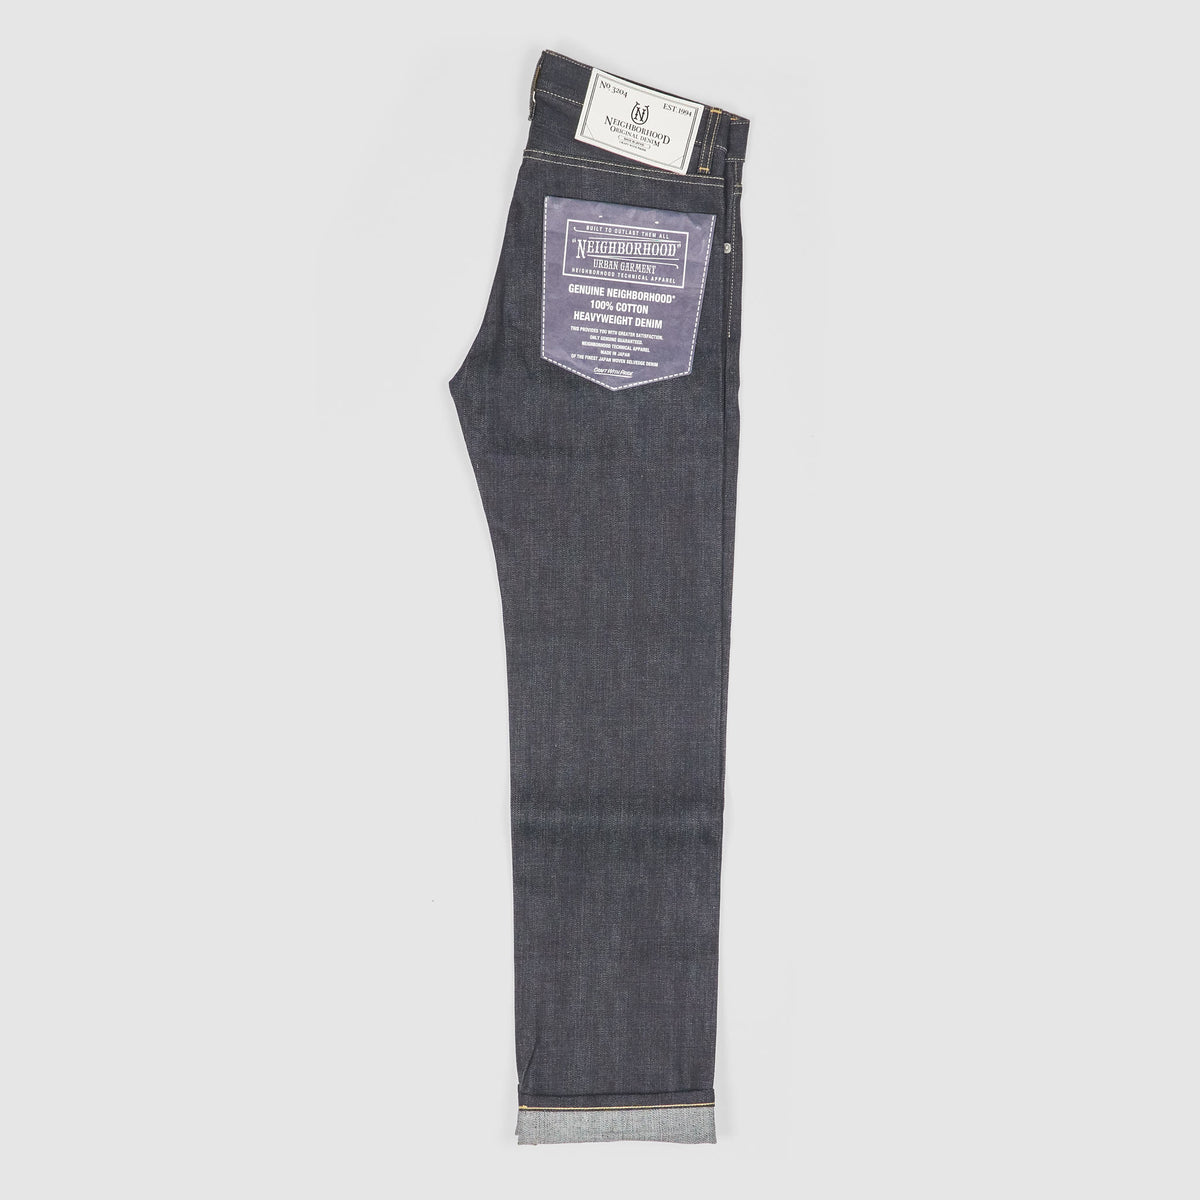 5 Pants To Buy That Aren't Skinny Jeans - TeriLyn Adams